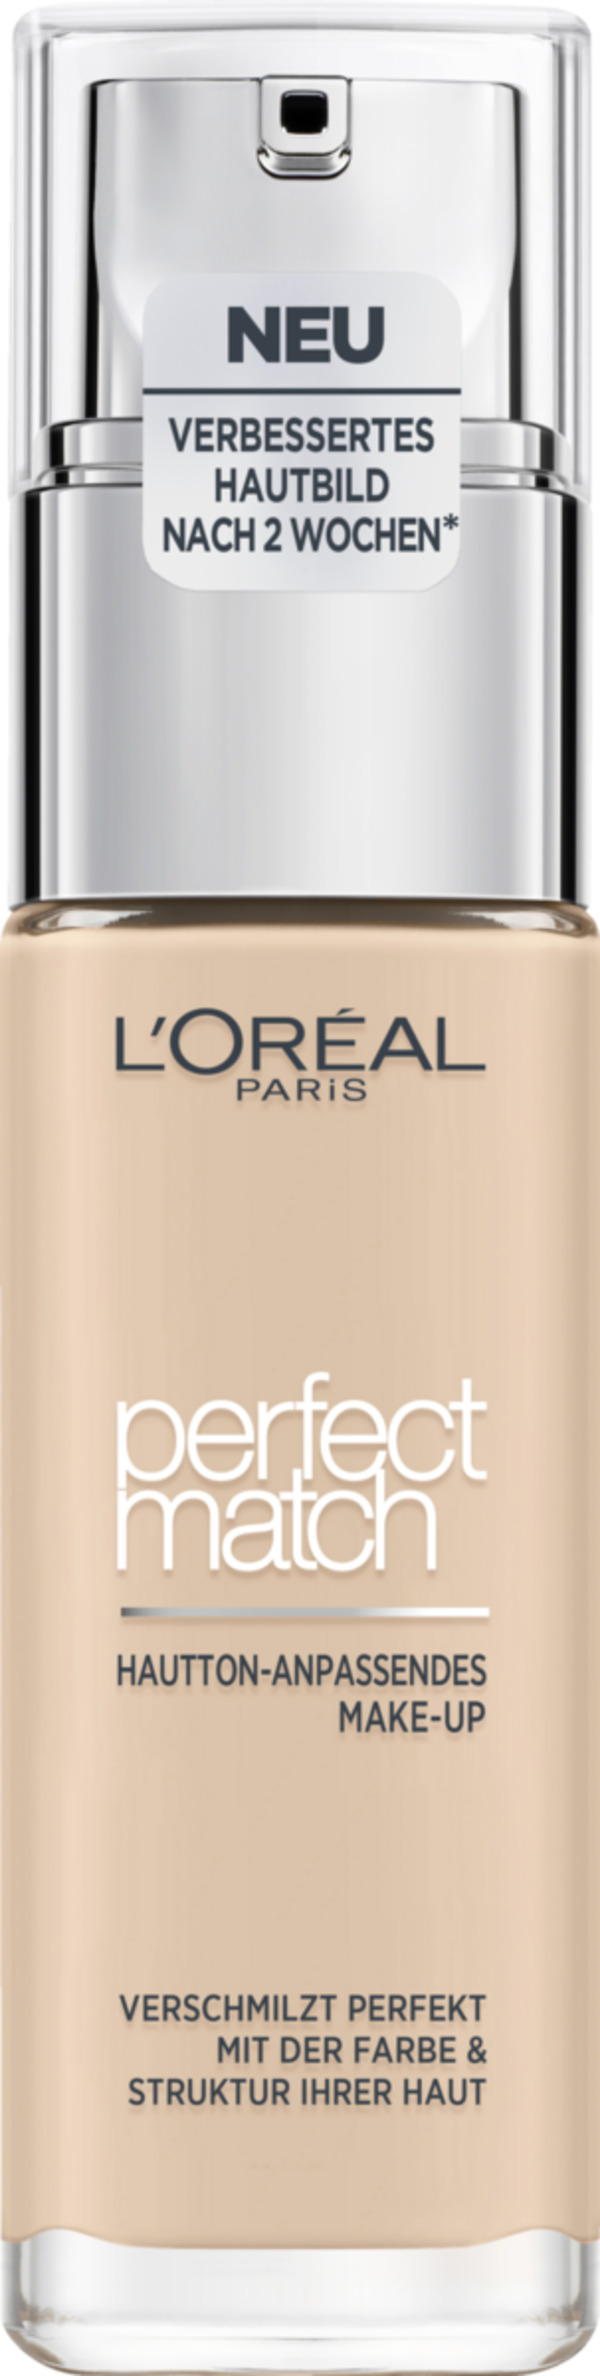 Bild 1 von L’Oréal Paris MakeUp flüssig Perfect Match 0.5.N porc 29.30 EUR/100 ml